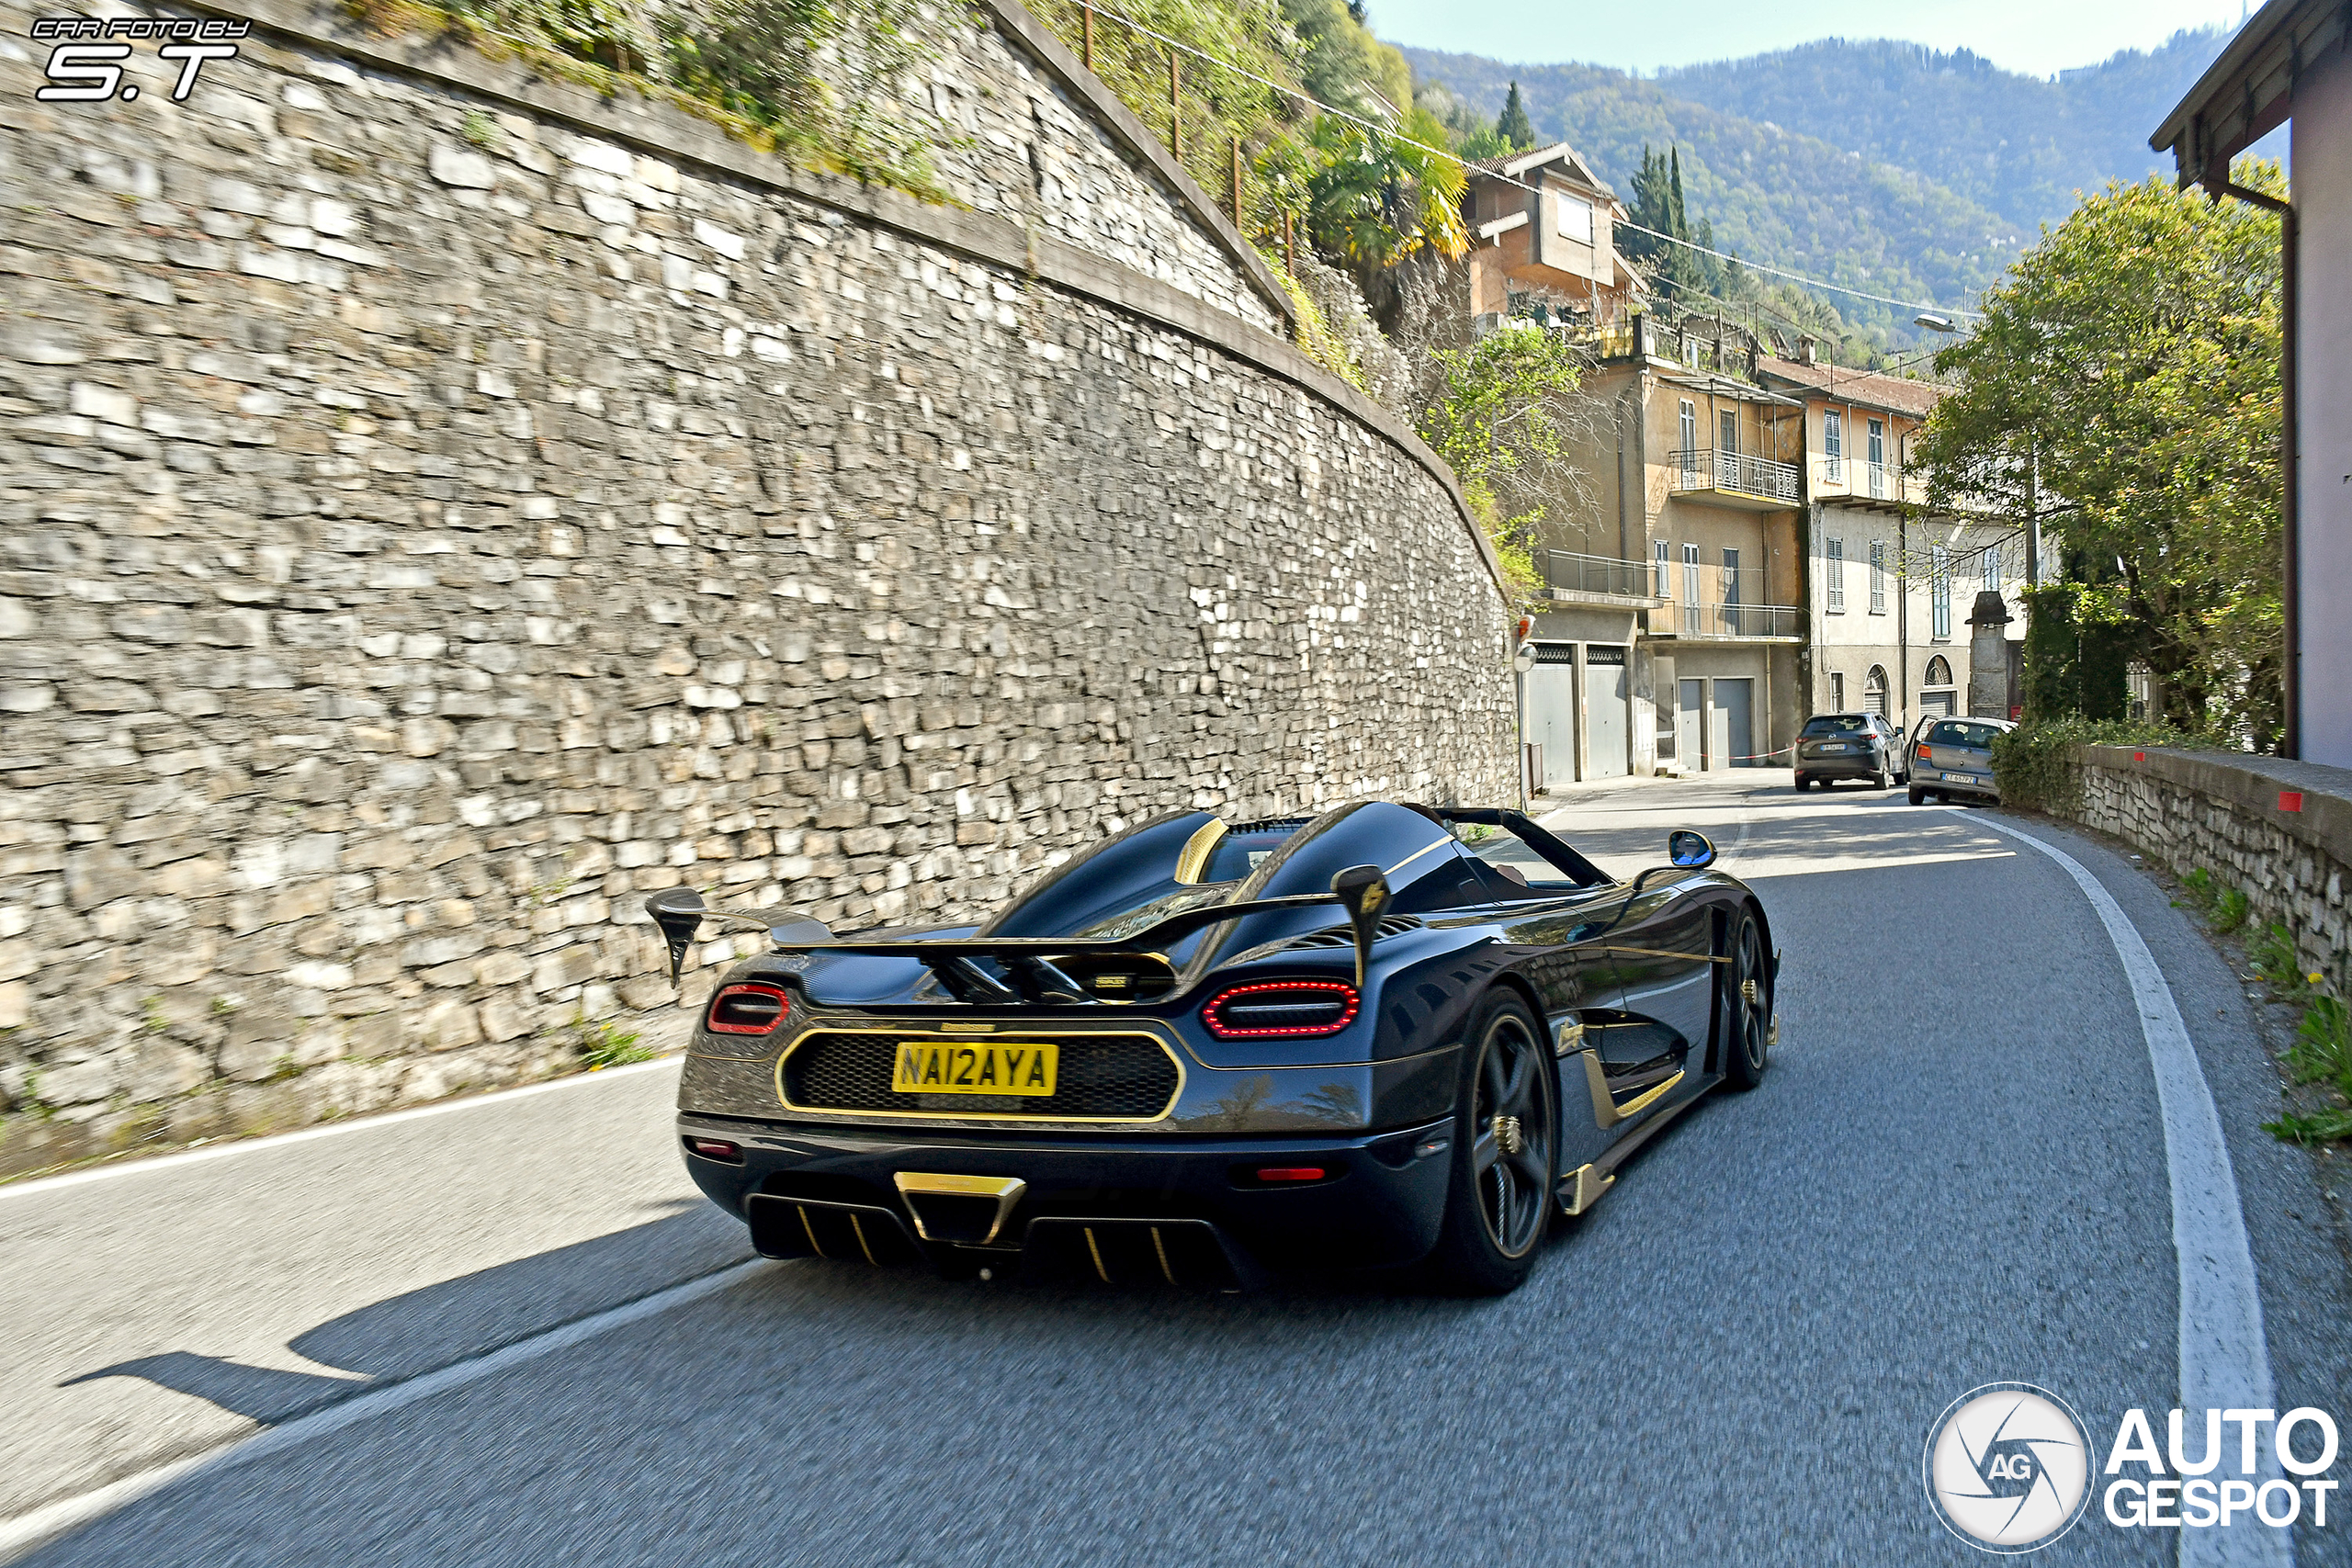 A golden masterpiece roams the streets of Como